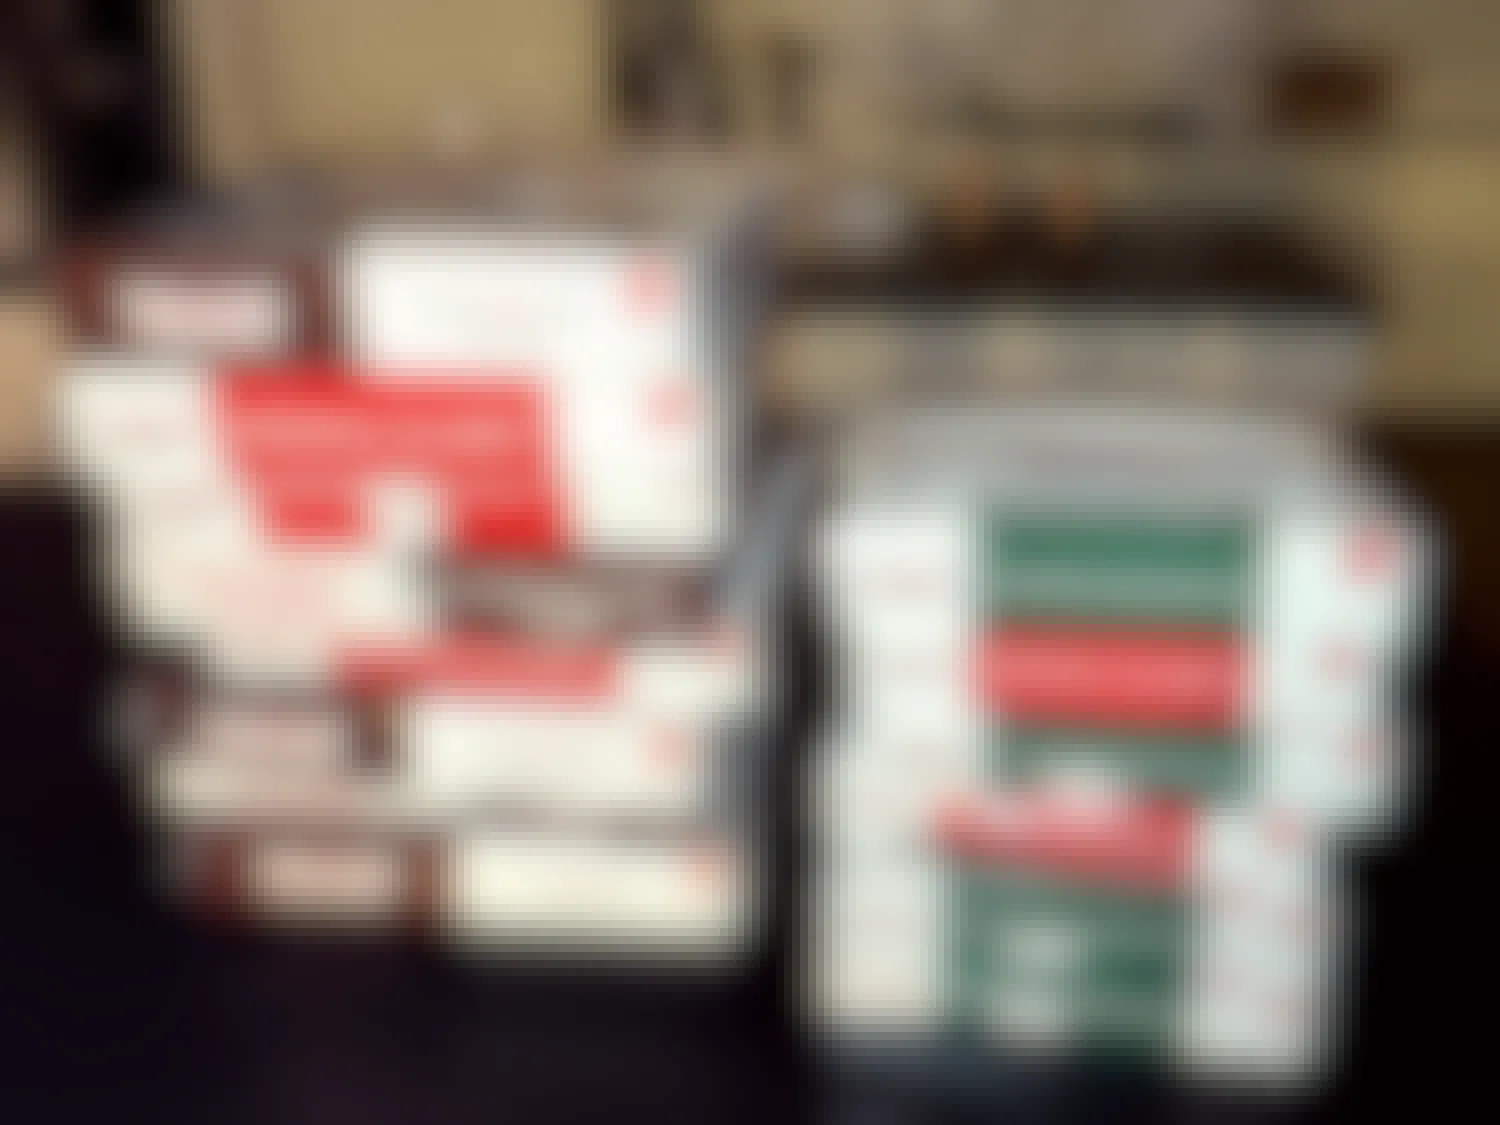 approximately a dozen boxes of krispy kreme doughnuts on a kitchen countertop